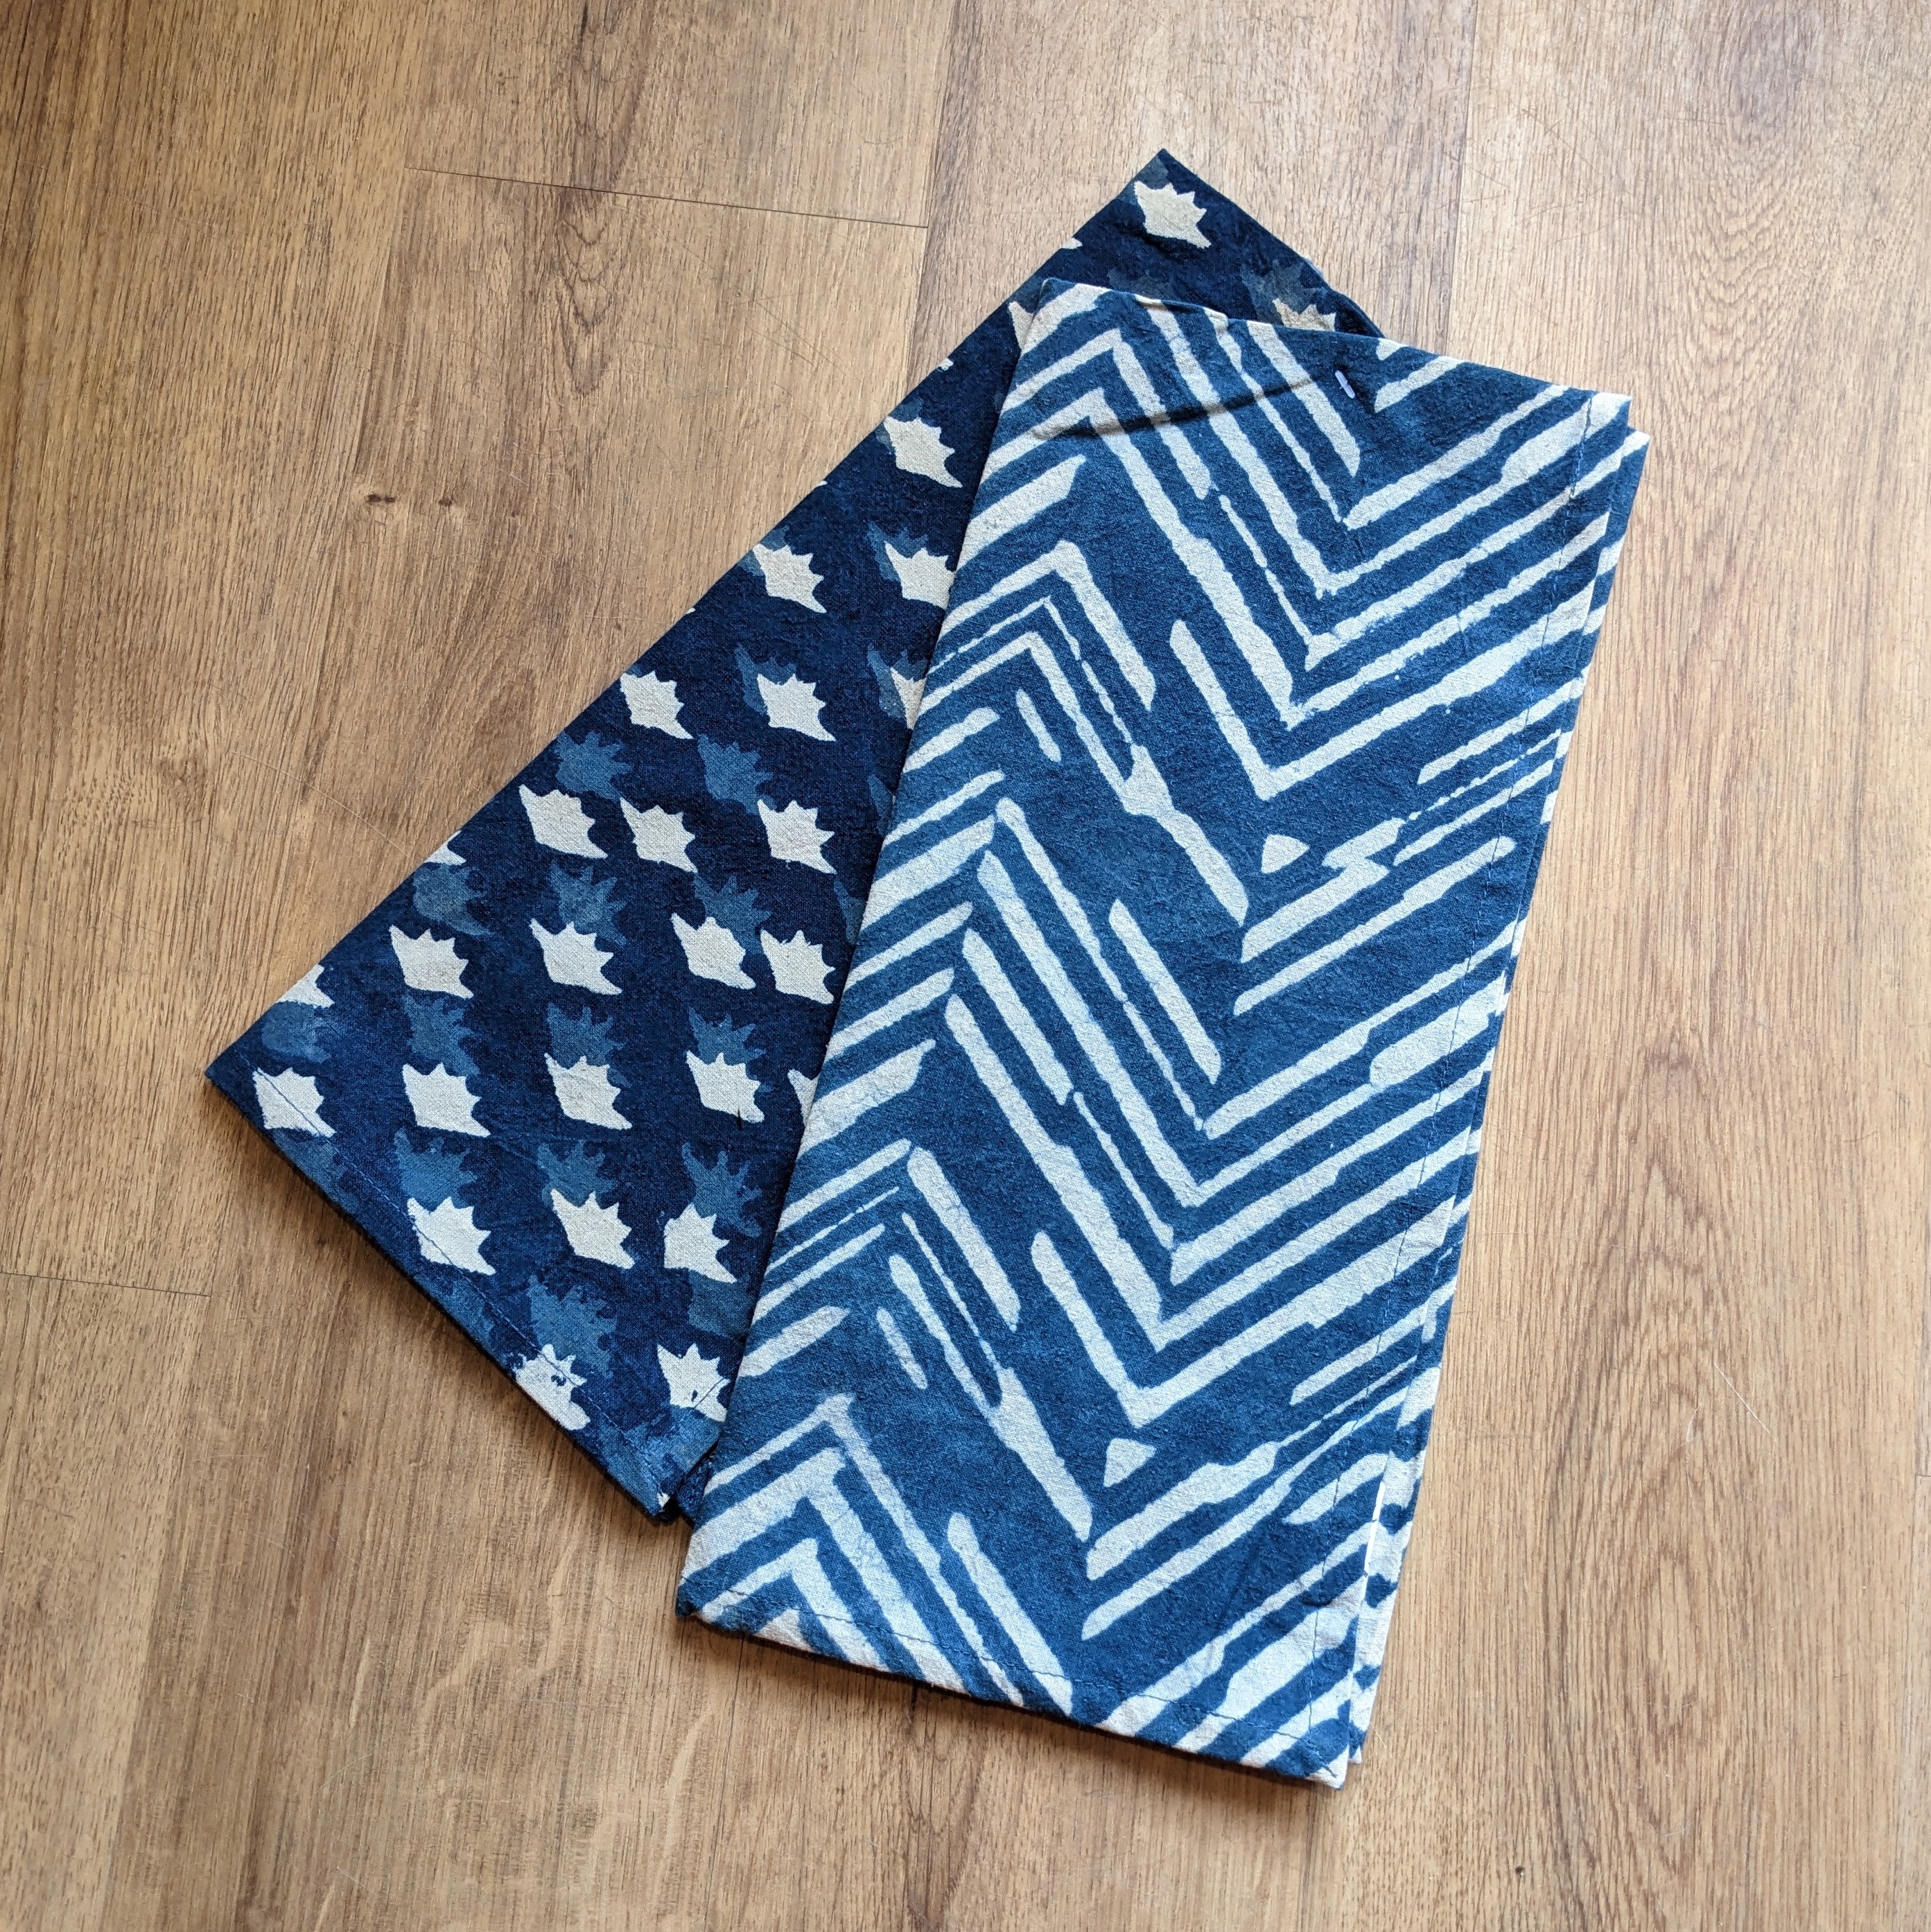 Danica // Heirloom Blockprint Towel Set of 2